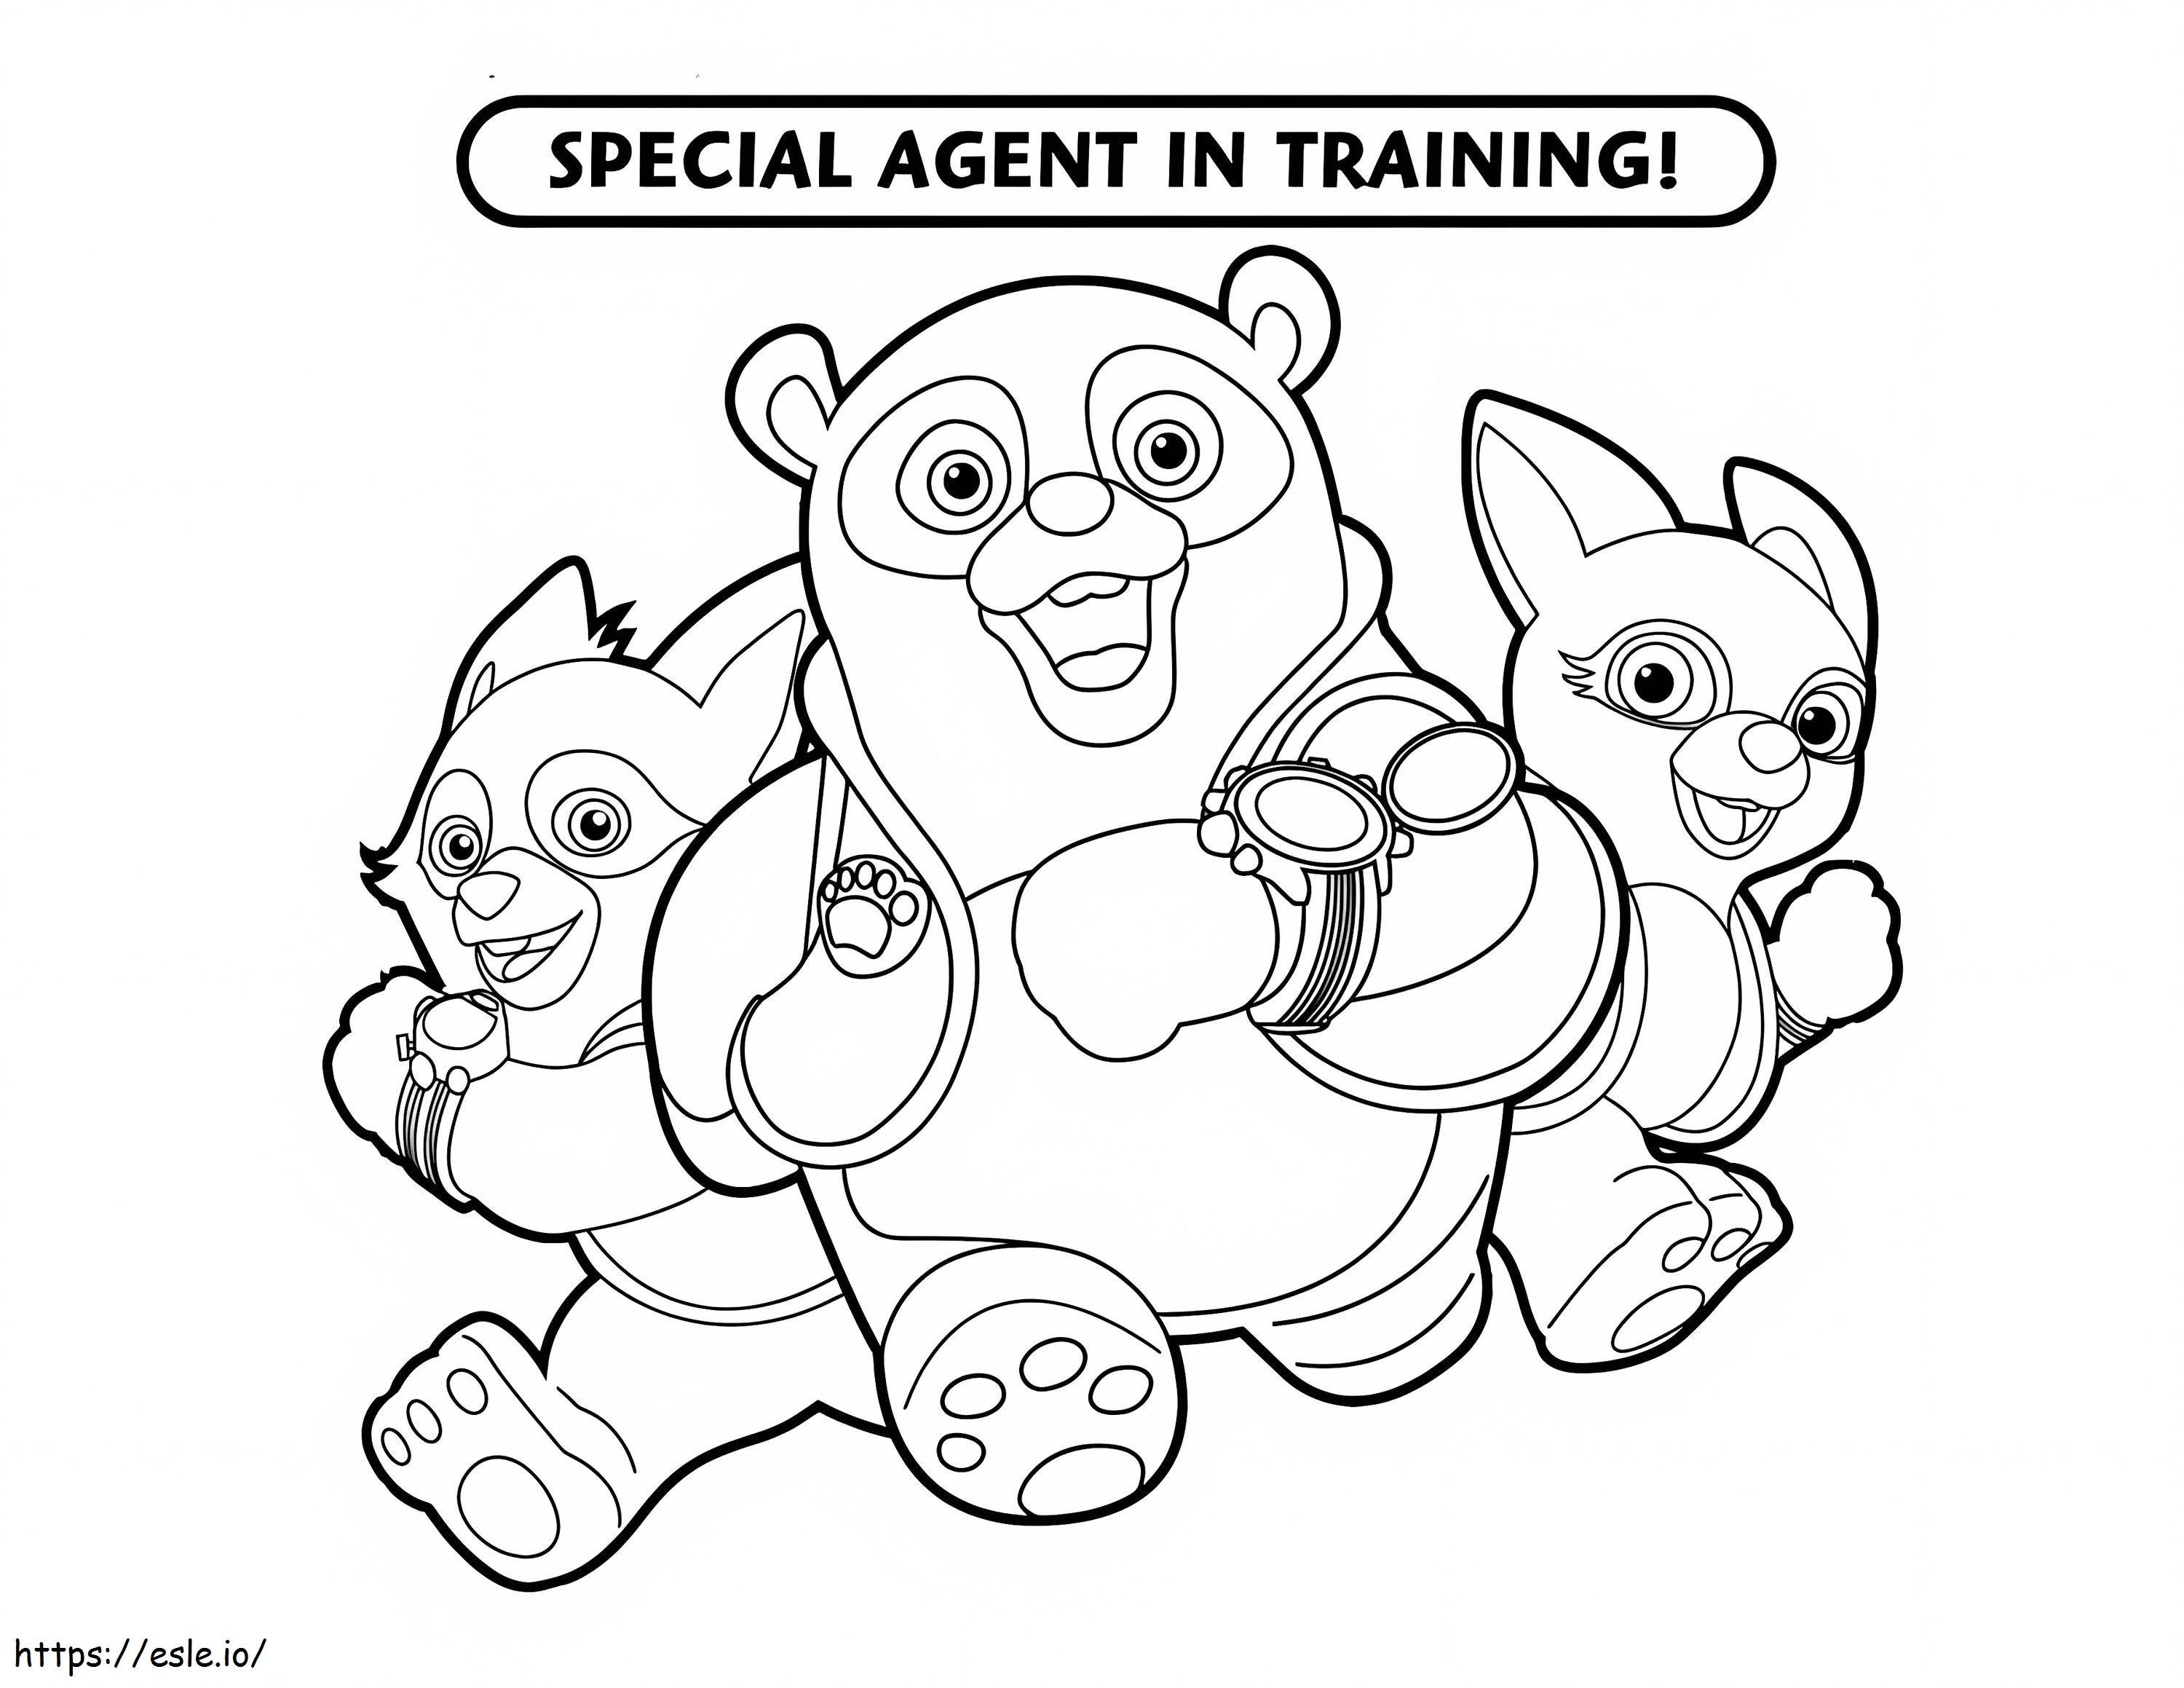 Personagens do Agente Especial Oso para colorir